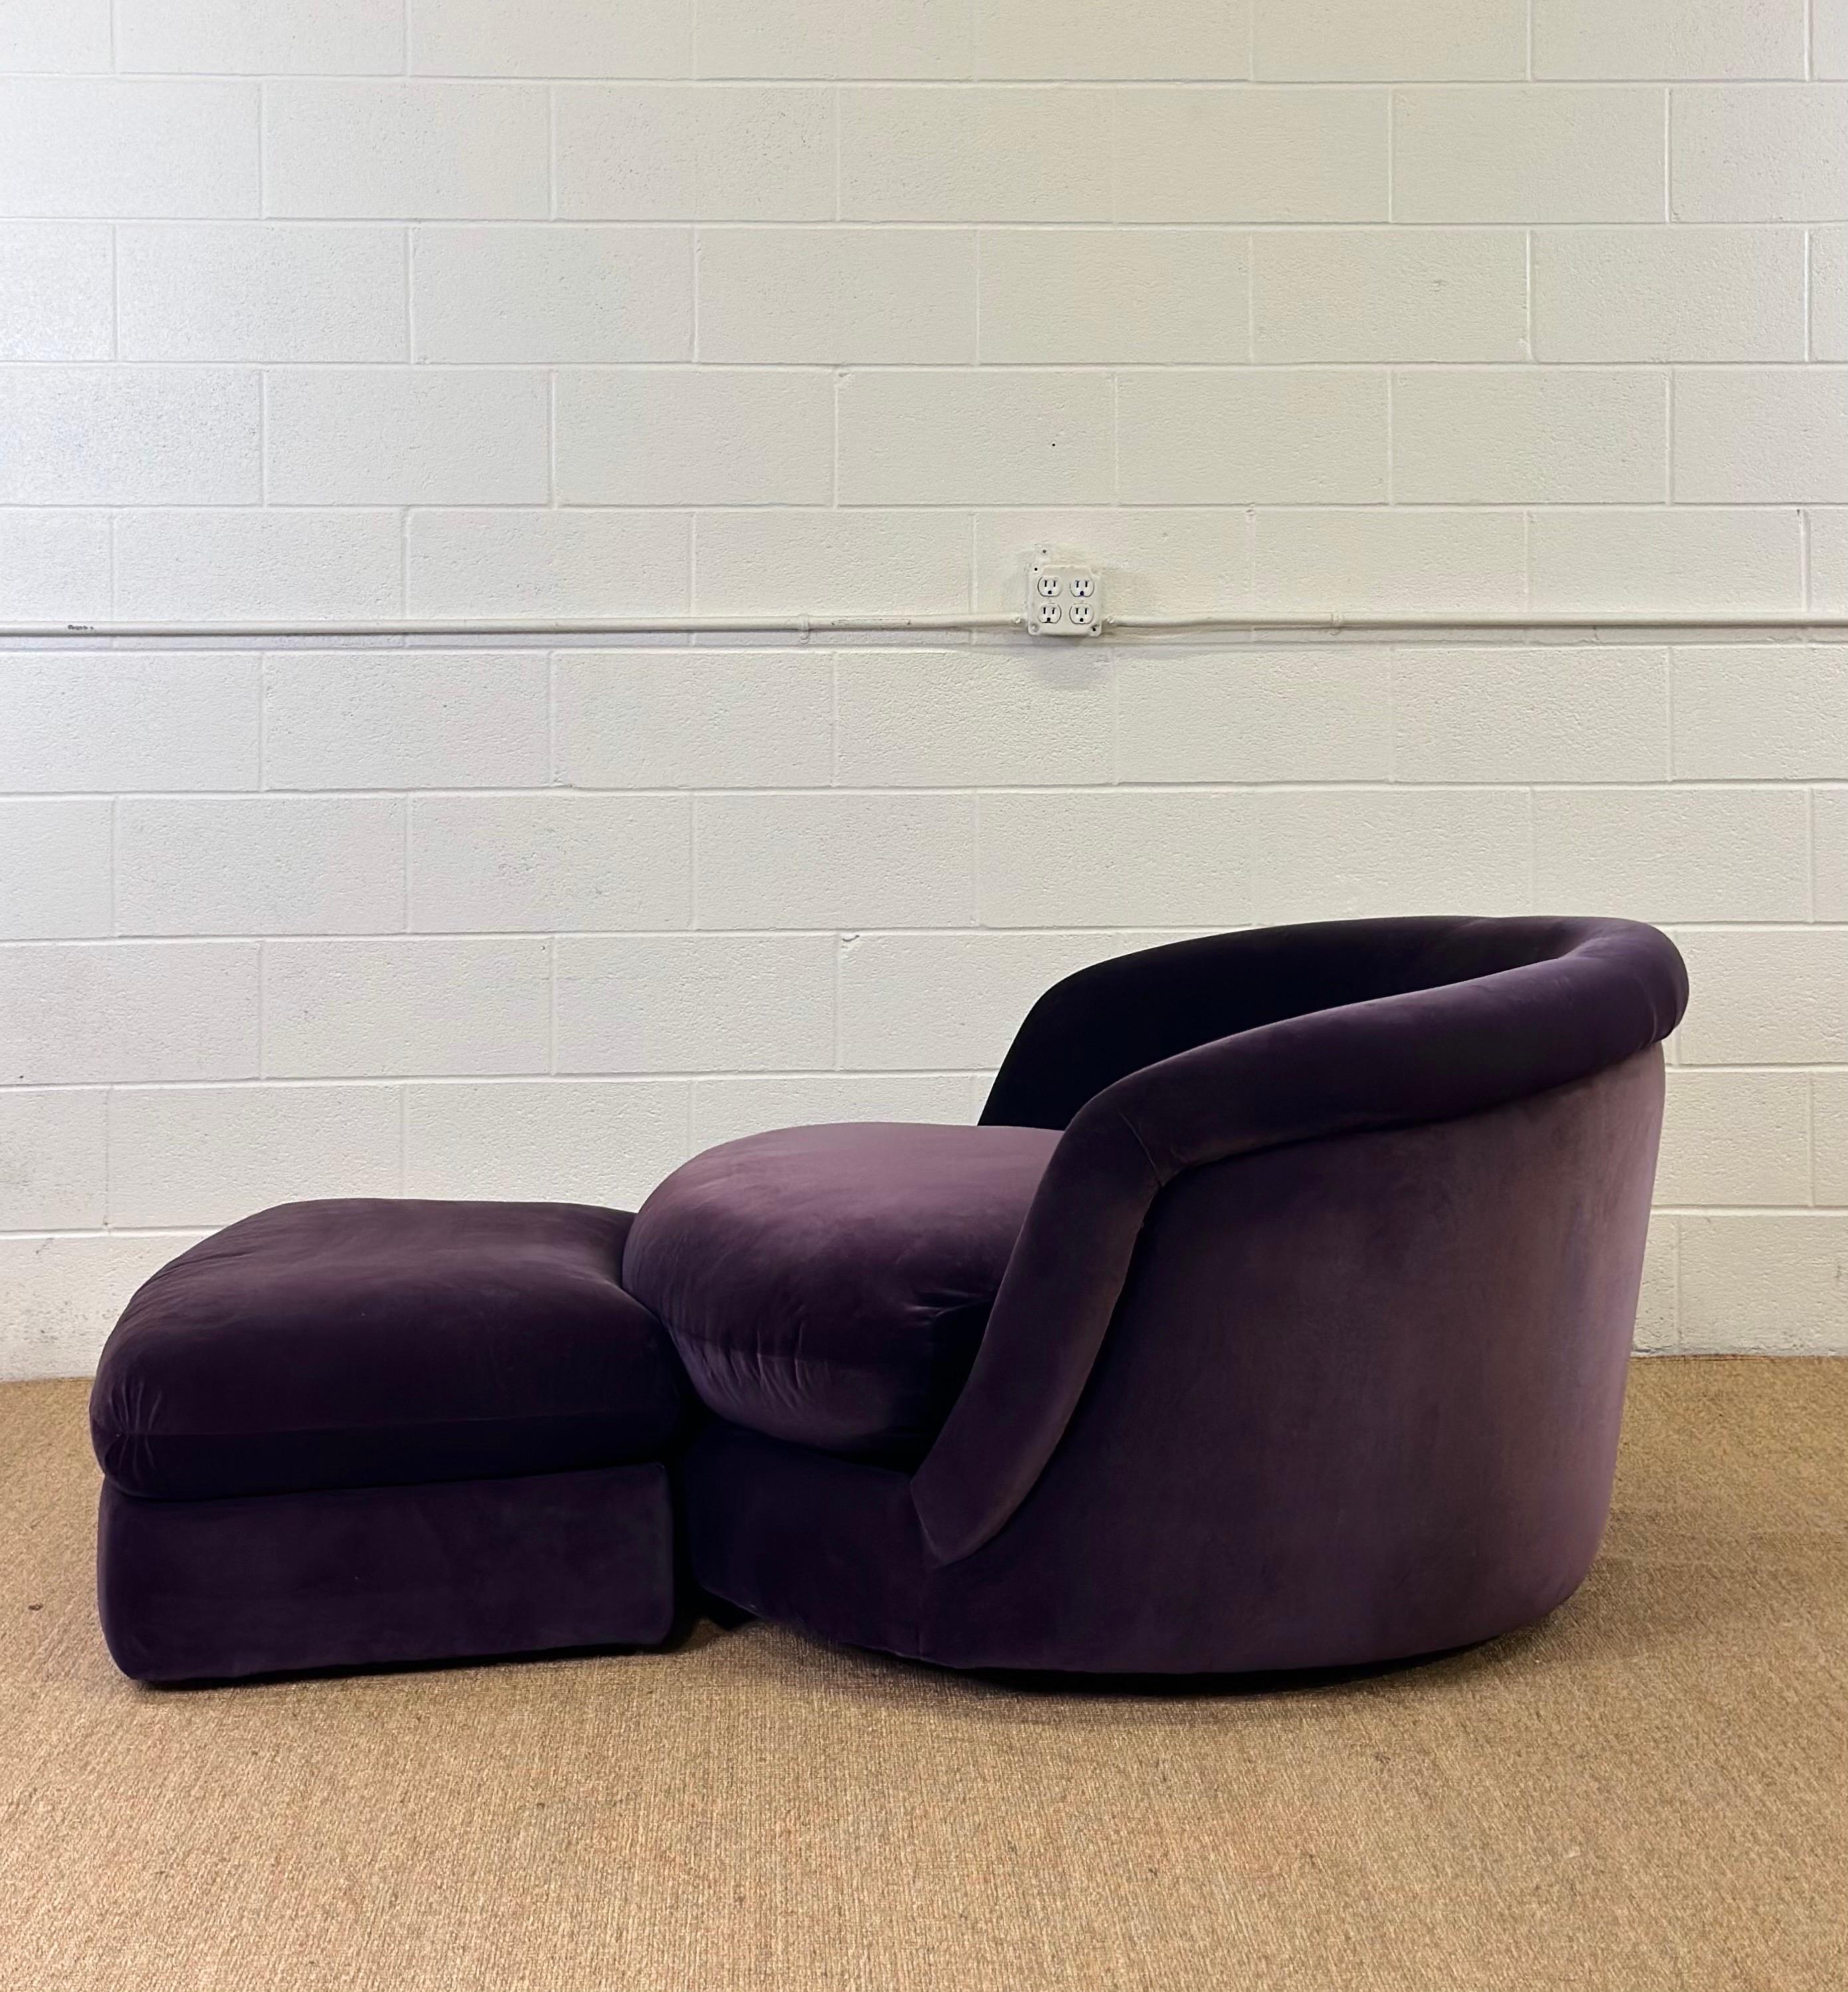 Nous avons le plaisir de vous proposer une chaise Giant Tub, circa 1996.  Conçue à l'origine par le designer américain Milo Baughman en 1965 pour Thayer Coggin, cette chaise pivotante est devenue un classique de la modernité du milieu du siècle,